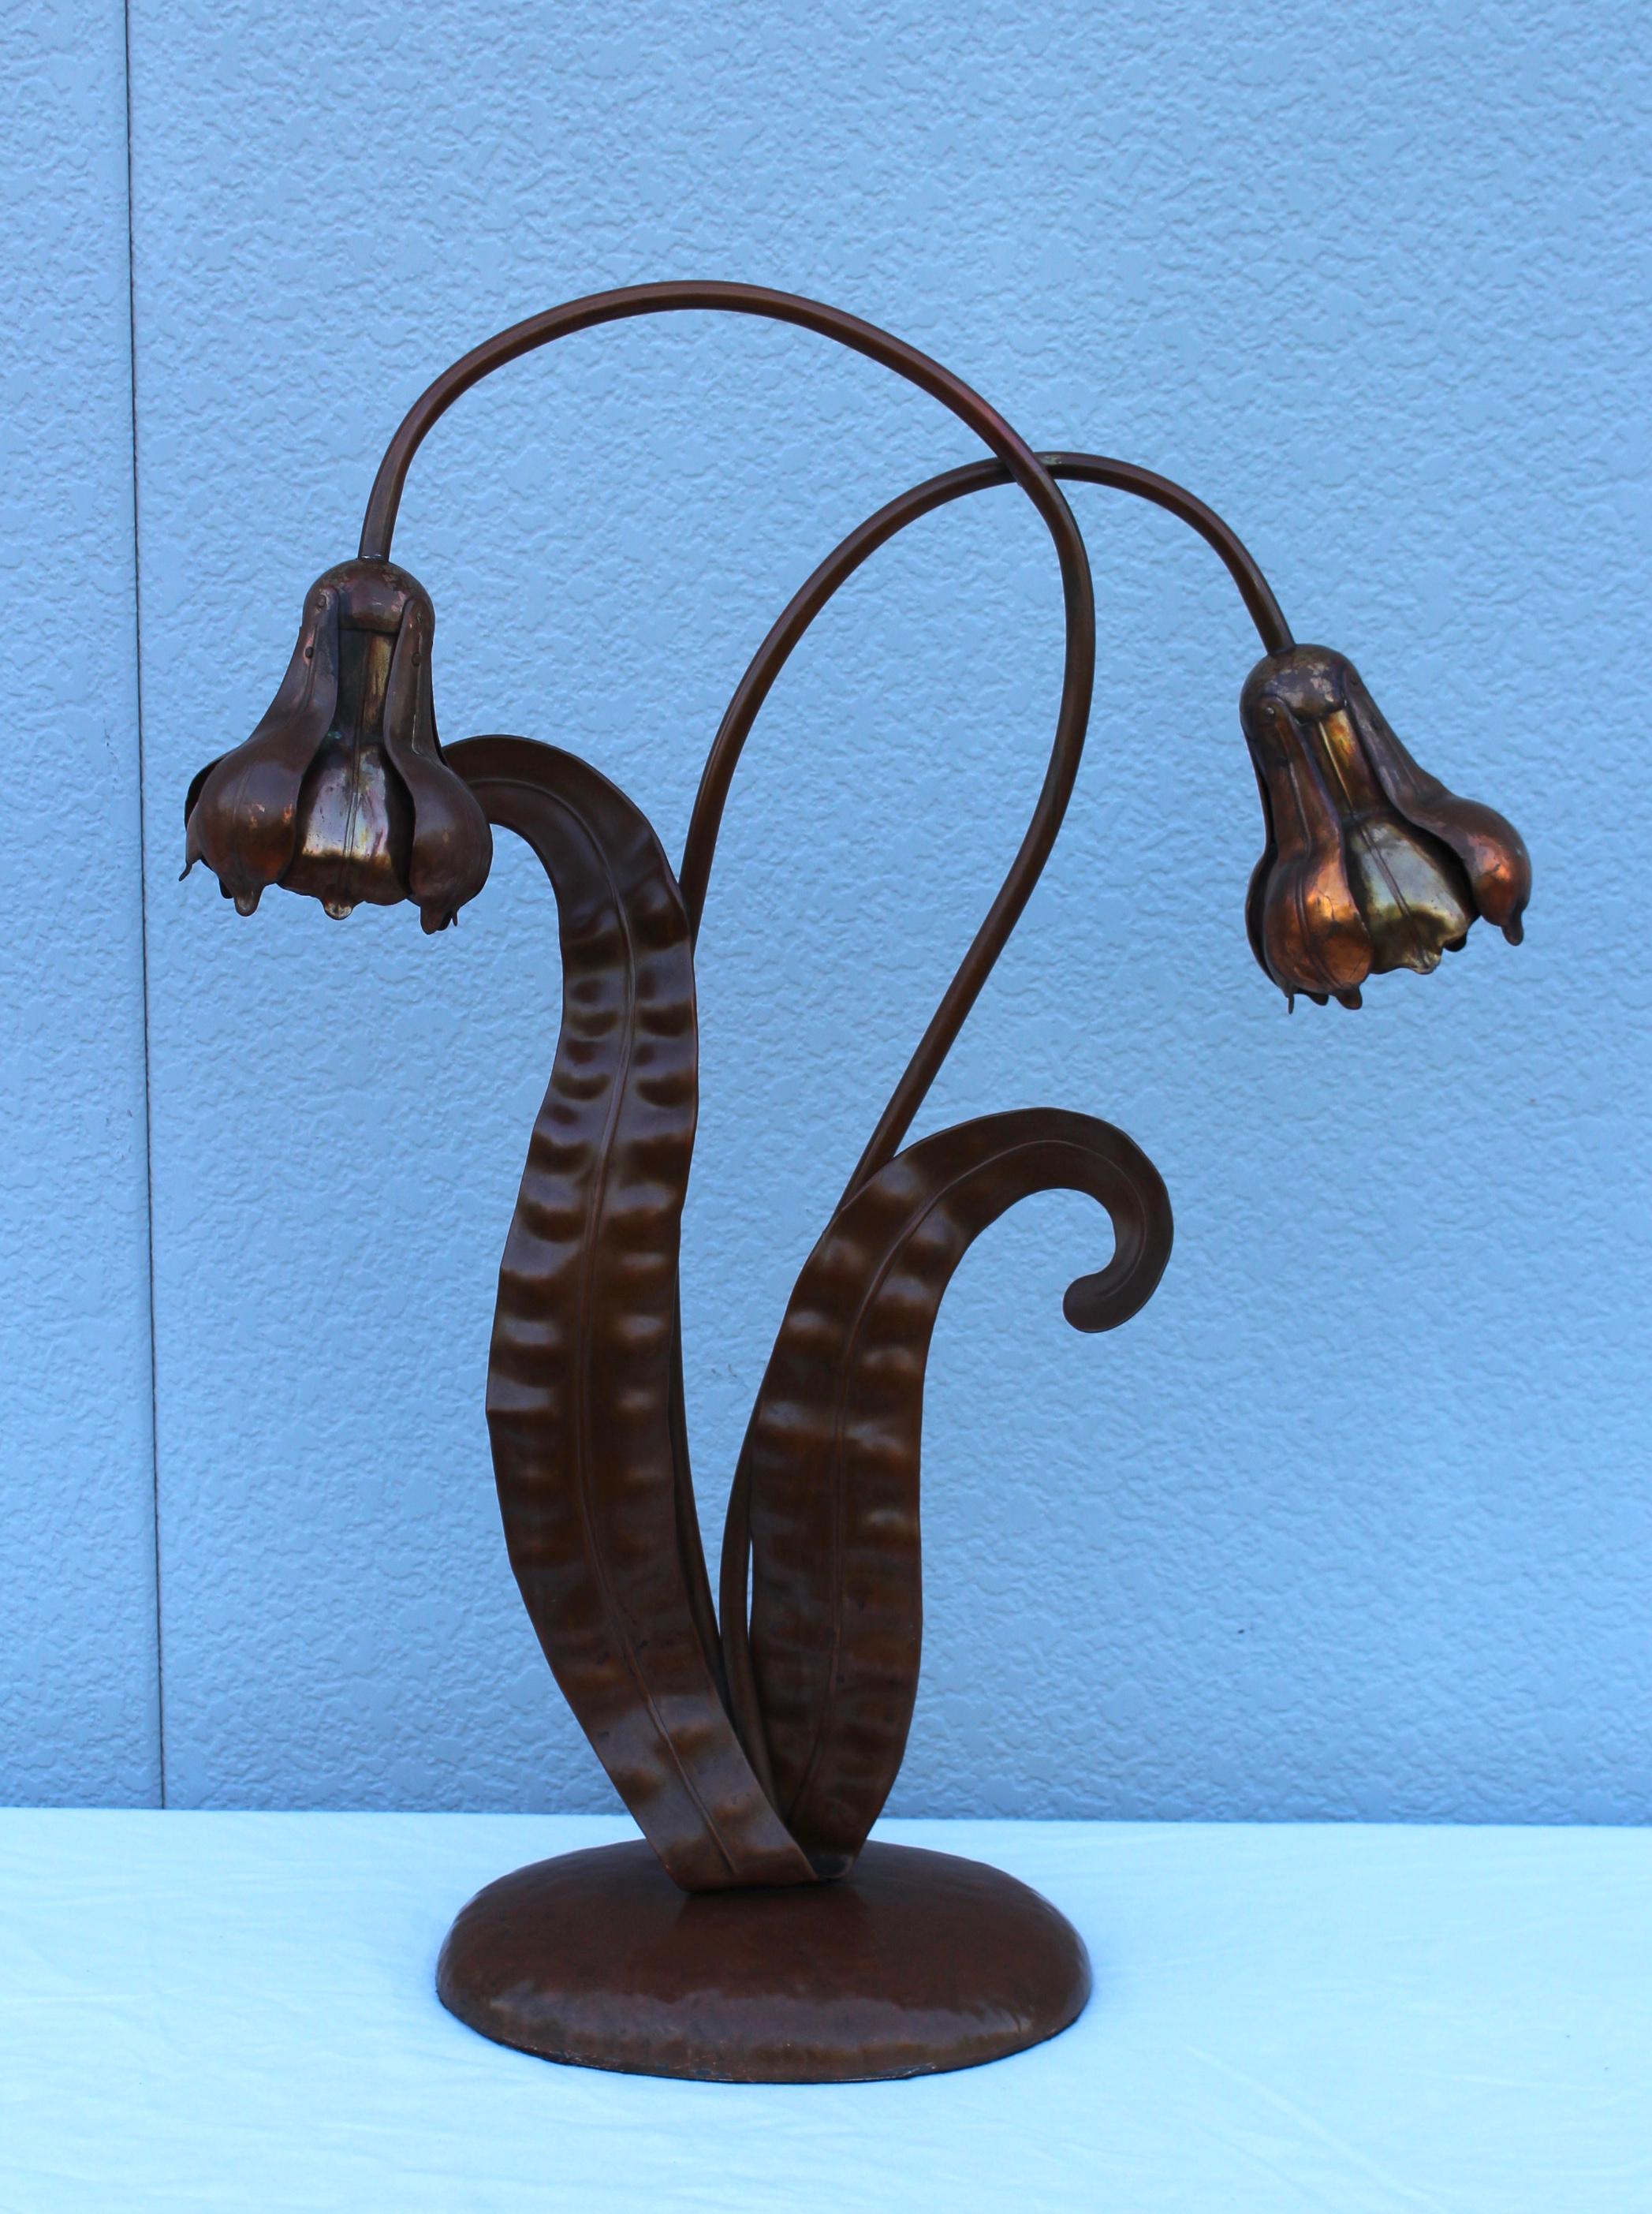 Superbe lampe de table en cuivre massif des années 1940, en état d'origine avec une usure et une patine mineures dues à l'âge et à l'utilisation, nouvellement reconnectée et prête à être utilisée.